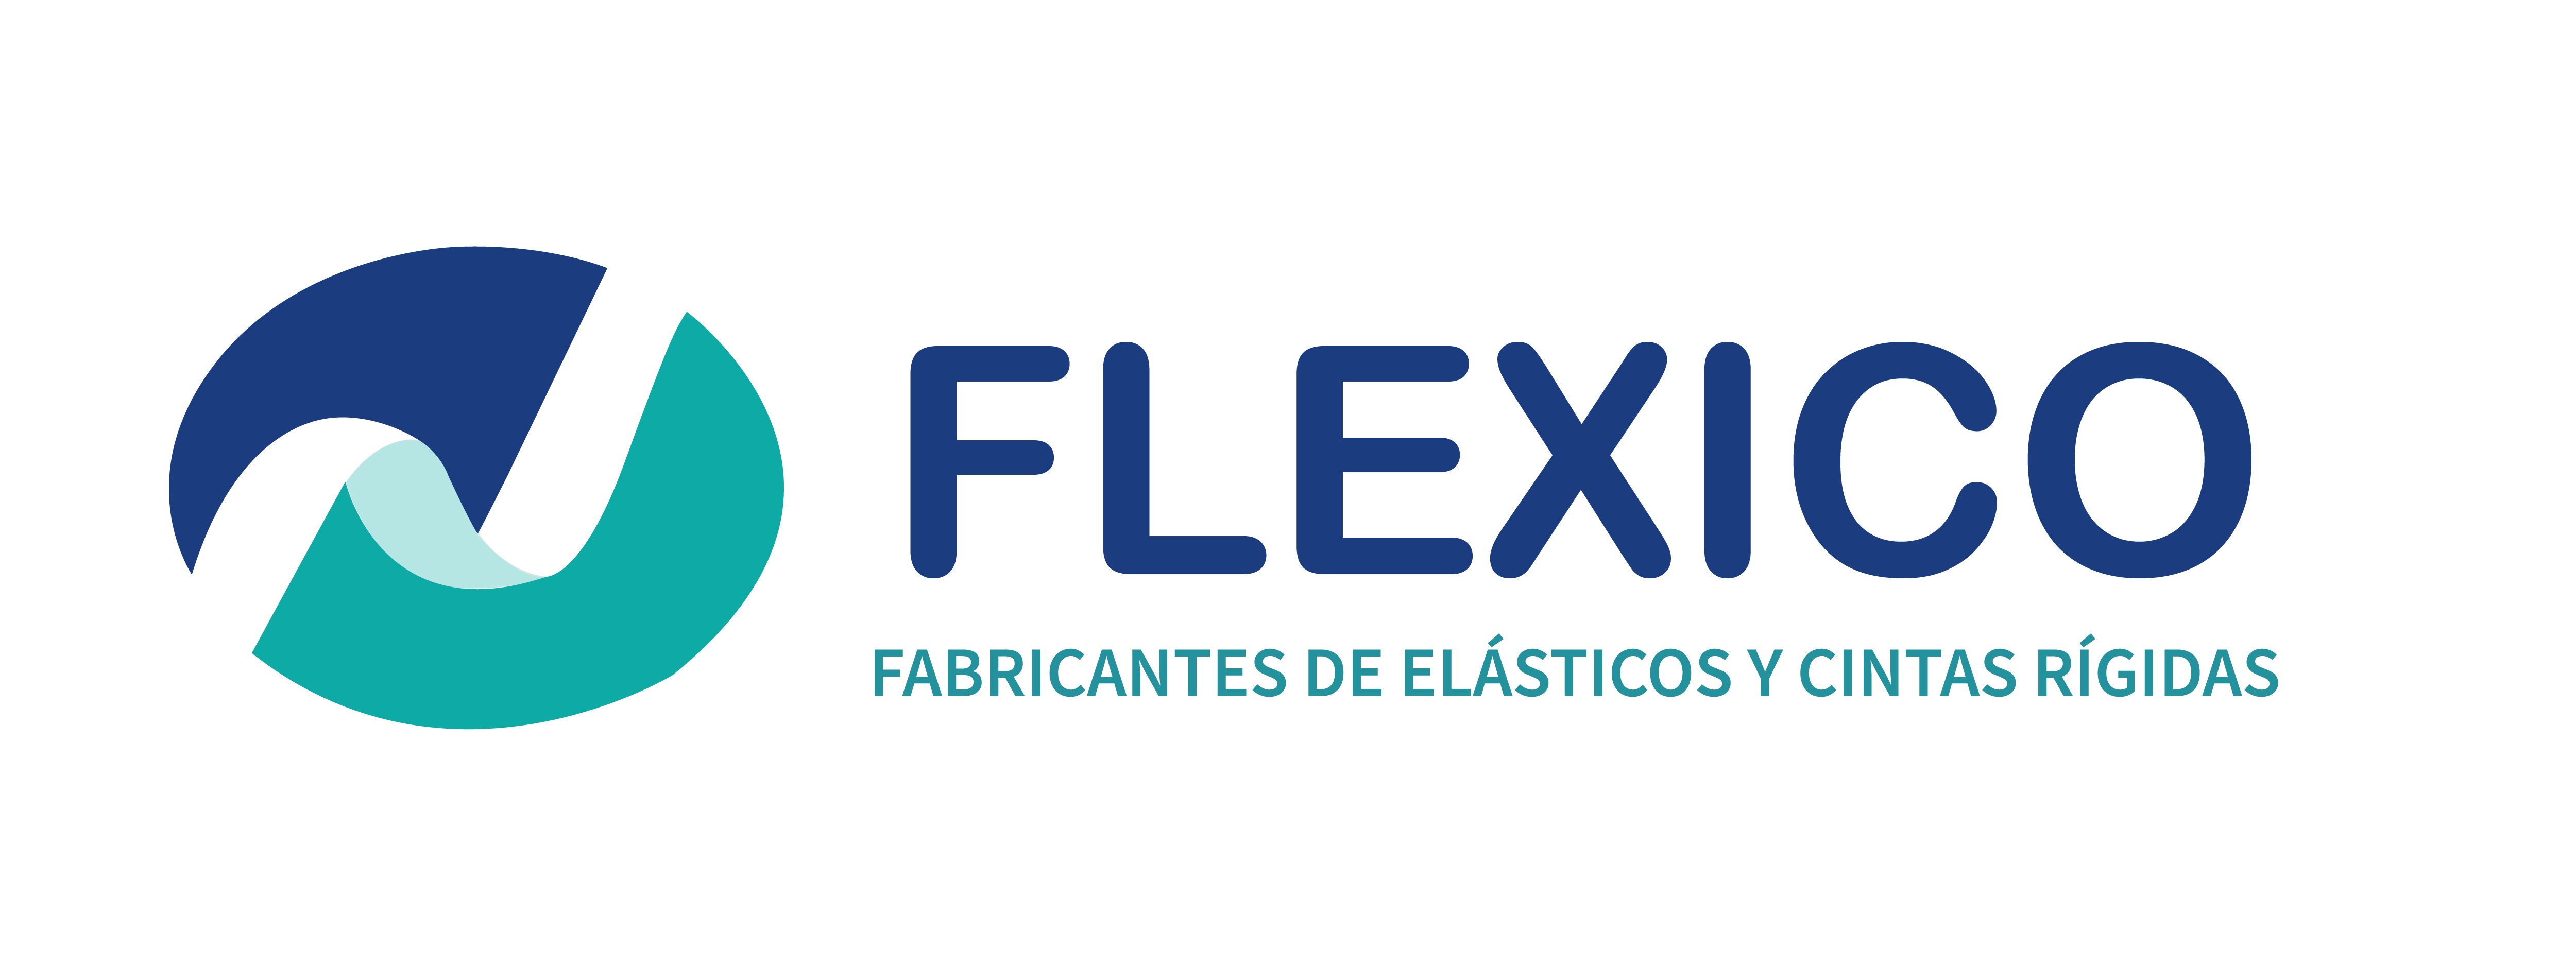 Flexico